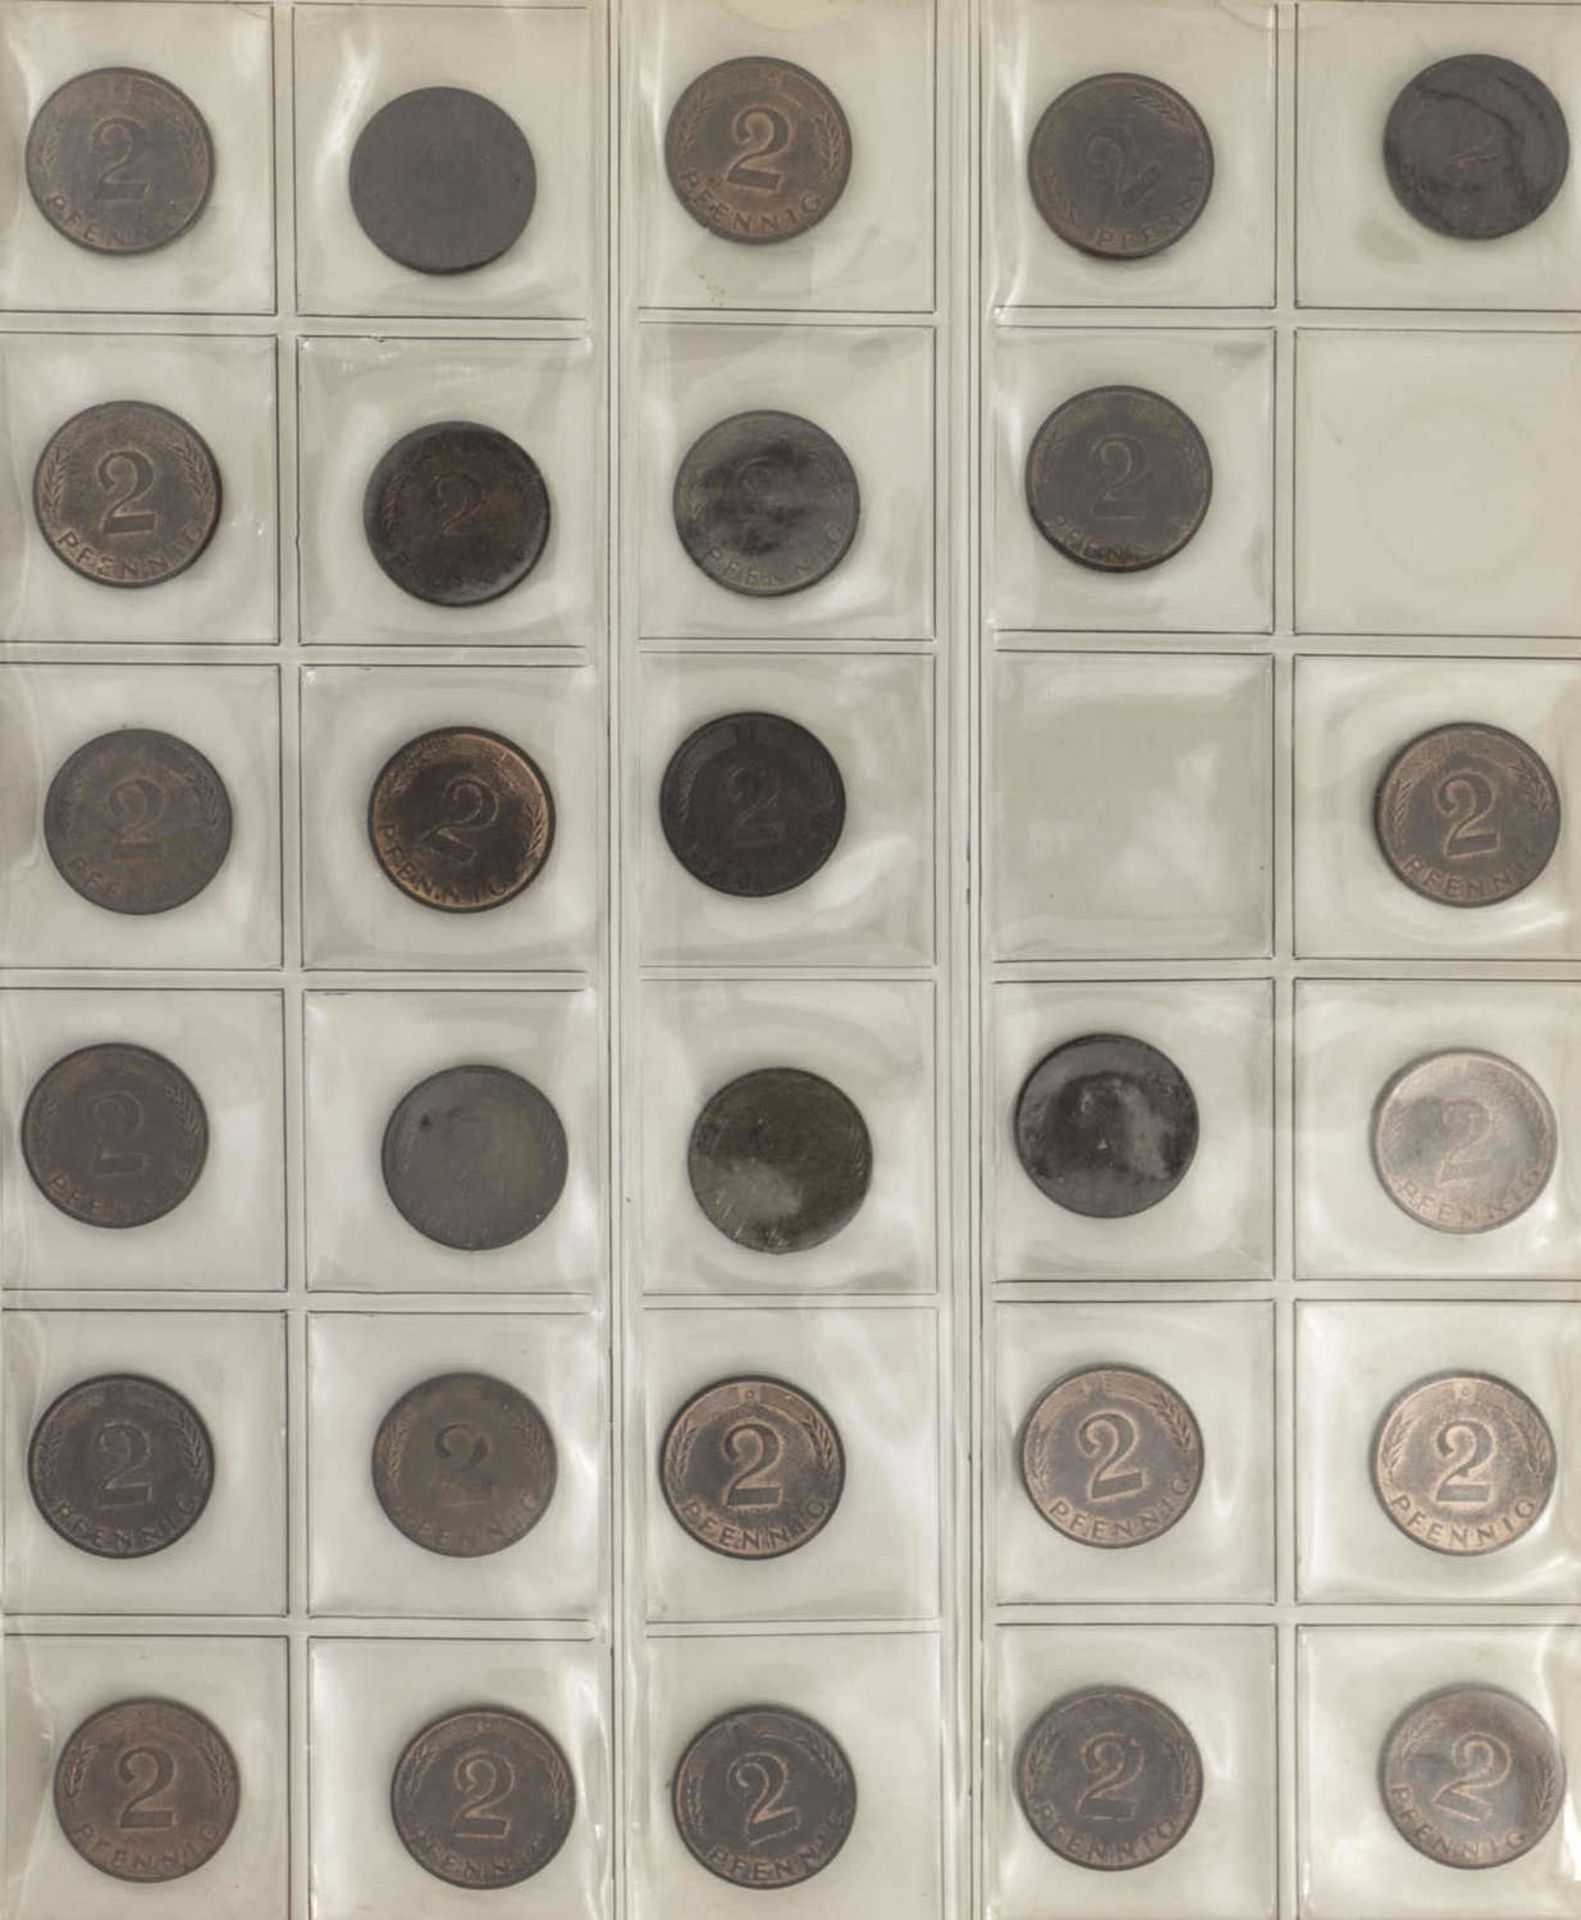 BRD Sammlung 1 Pfennig und 2 Pfennig - Münzen. Dabei: 1 Pfennig: 1948 - 50 DFGJ, 1966 - 85 DFGJ, 1 - Image 3 of 6